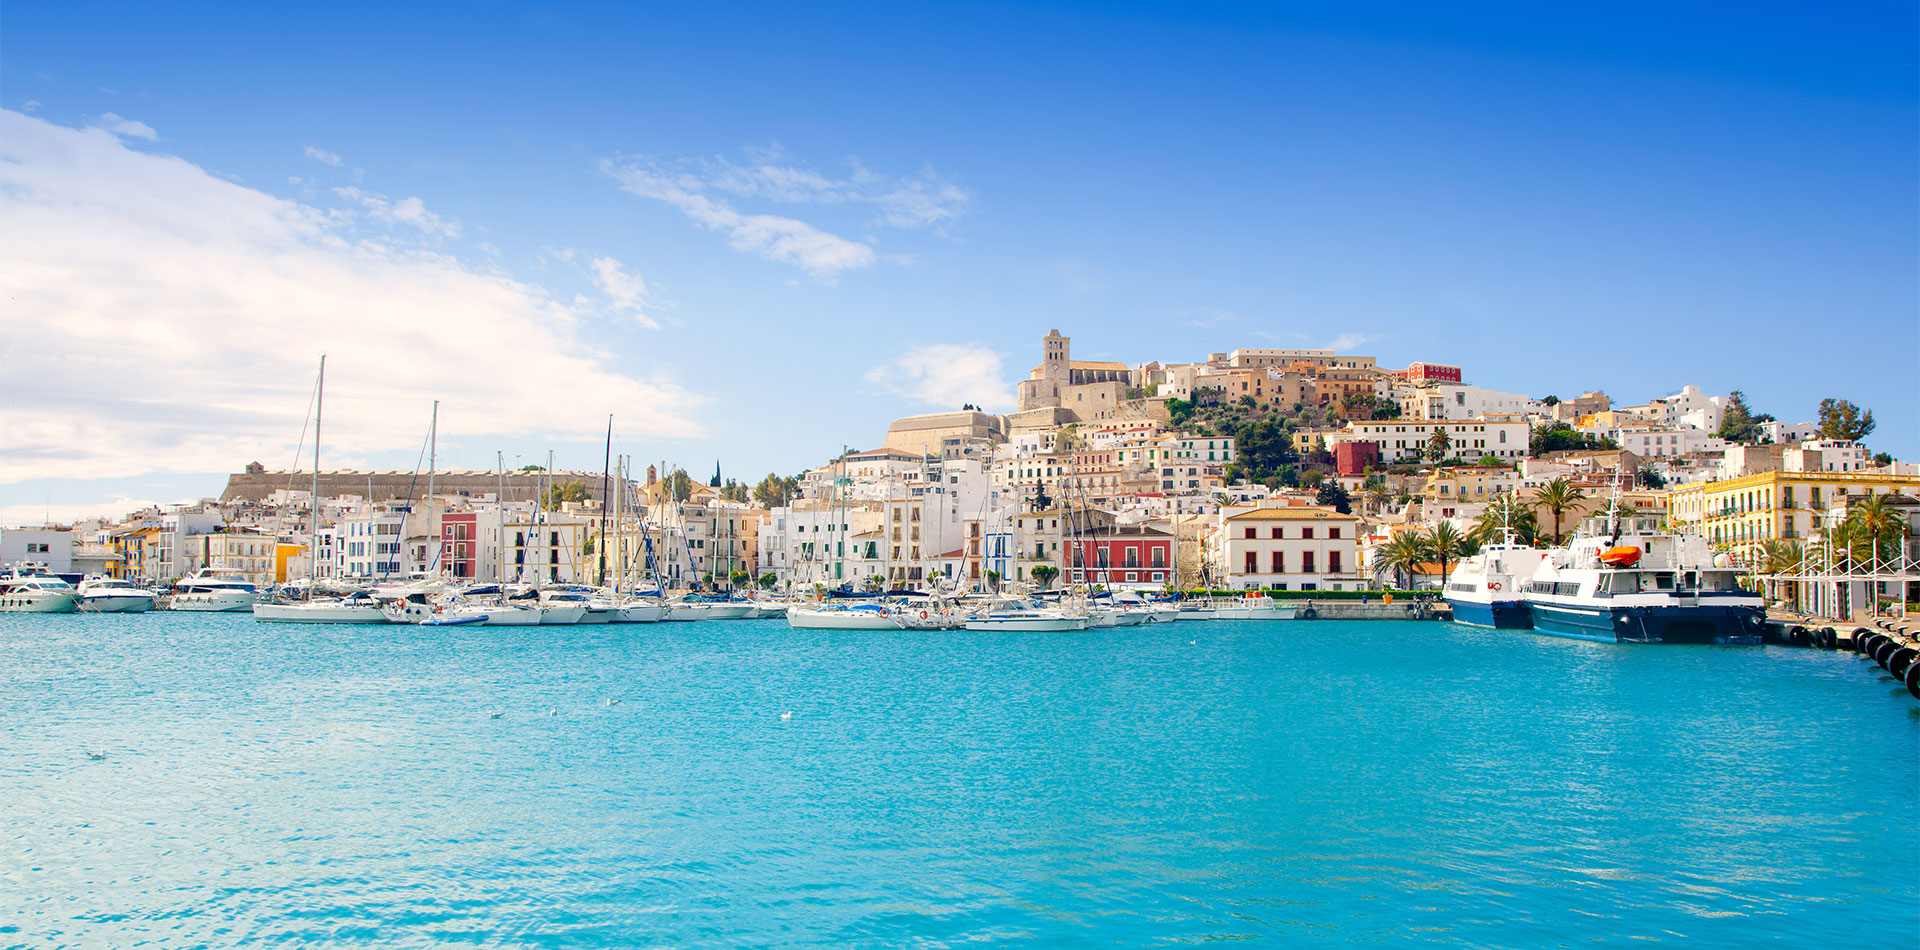 Views of Eivissa, Ibiza town